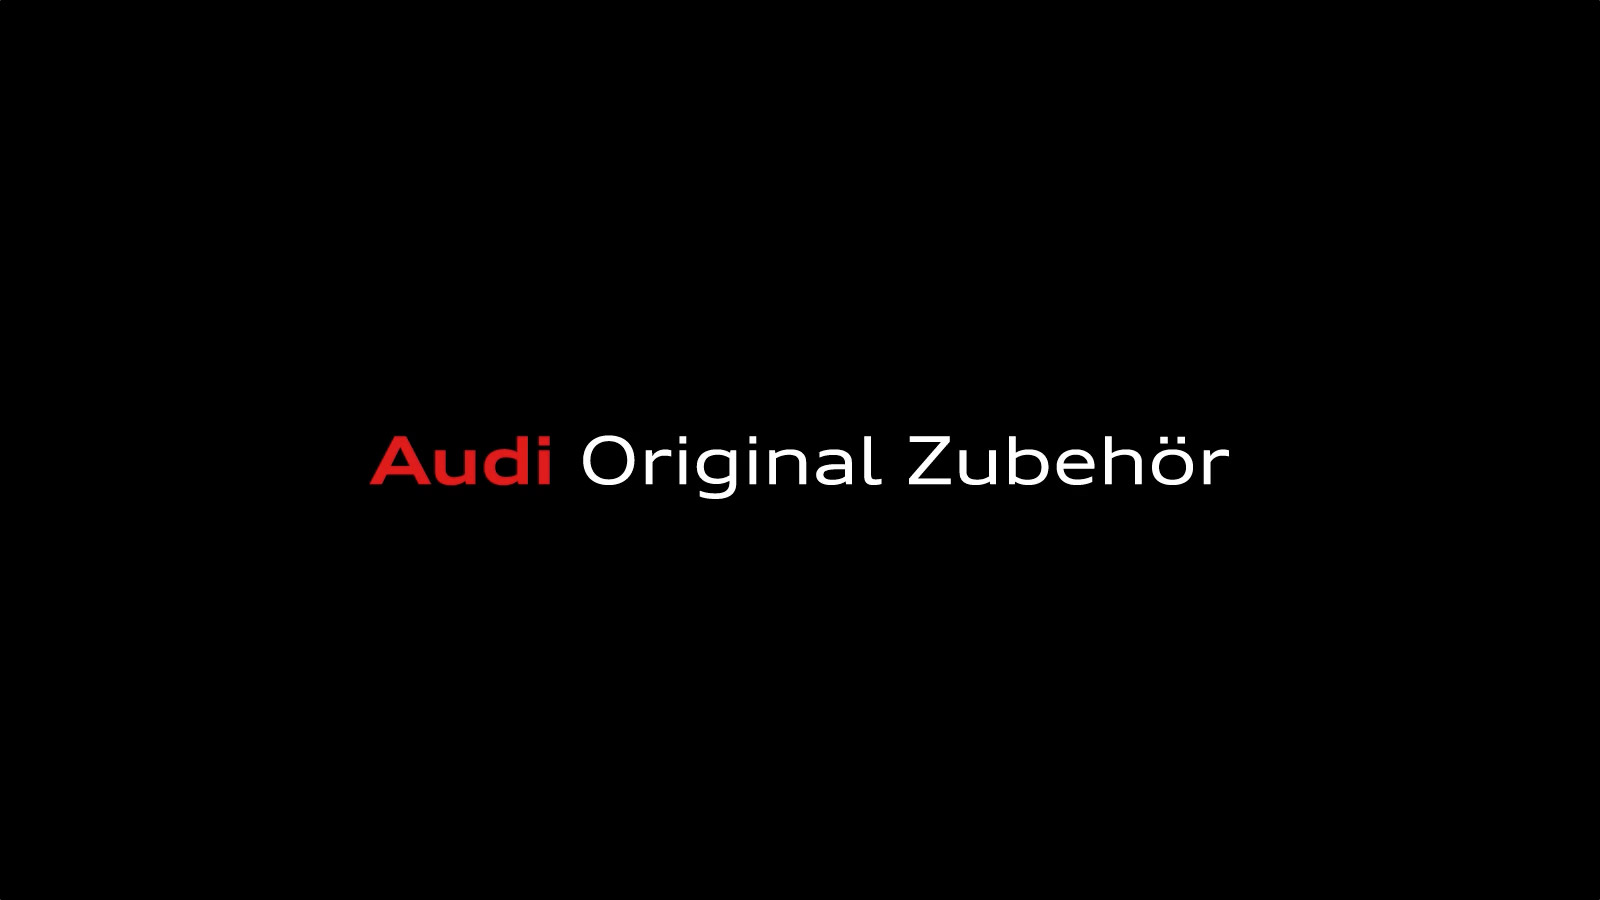 Audi Original Zubehör Packaging